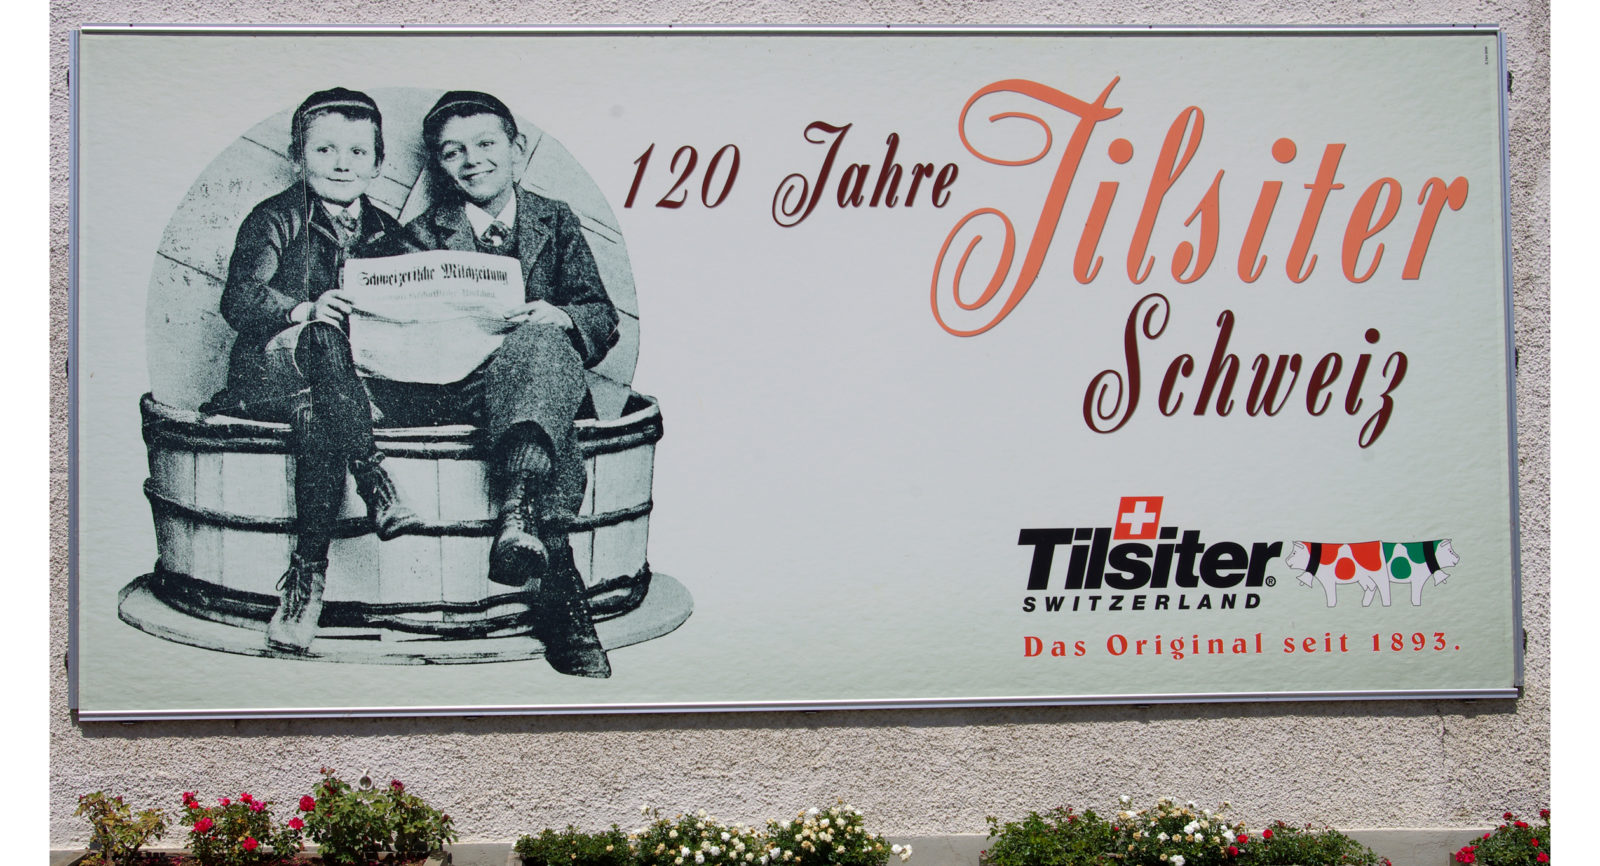 Die Familie Wartmann auf dem Holzhof in Amlikon-Bissegg gehört zu den ersten, die den Tilsiter in die Schweiz brachten.